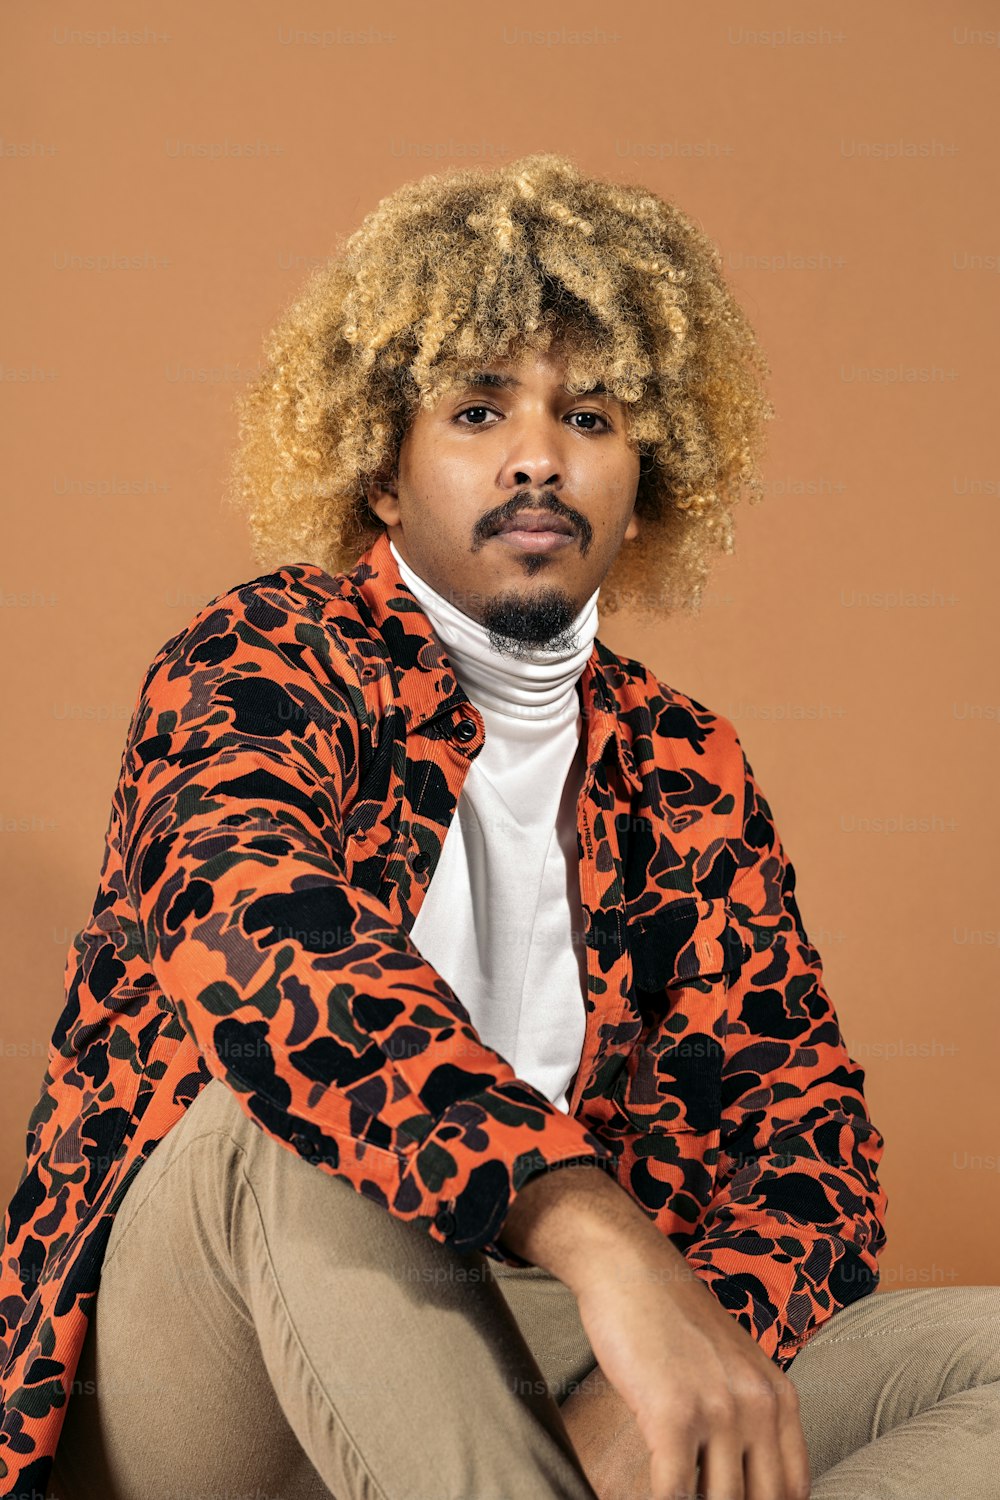 Archivio fotografico - elegante, afro, uomo, guardando la macchina fotografica, in studio, girato su sfondo marrone.